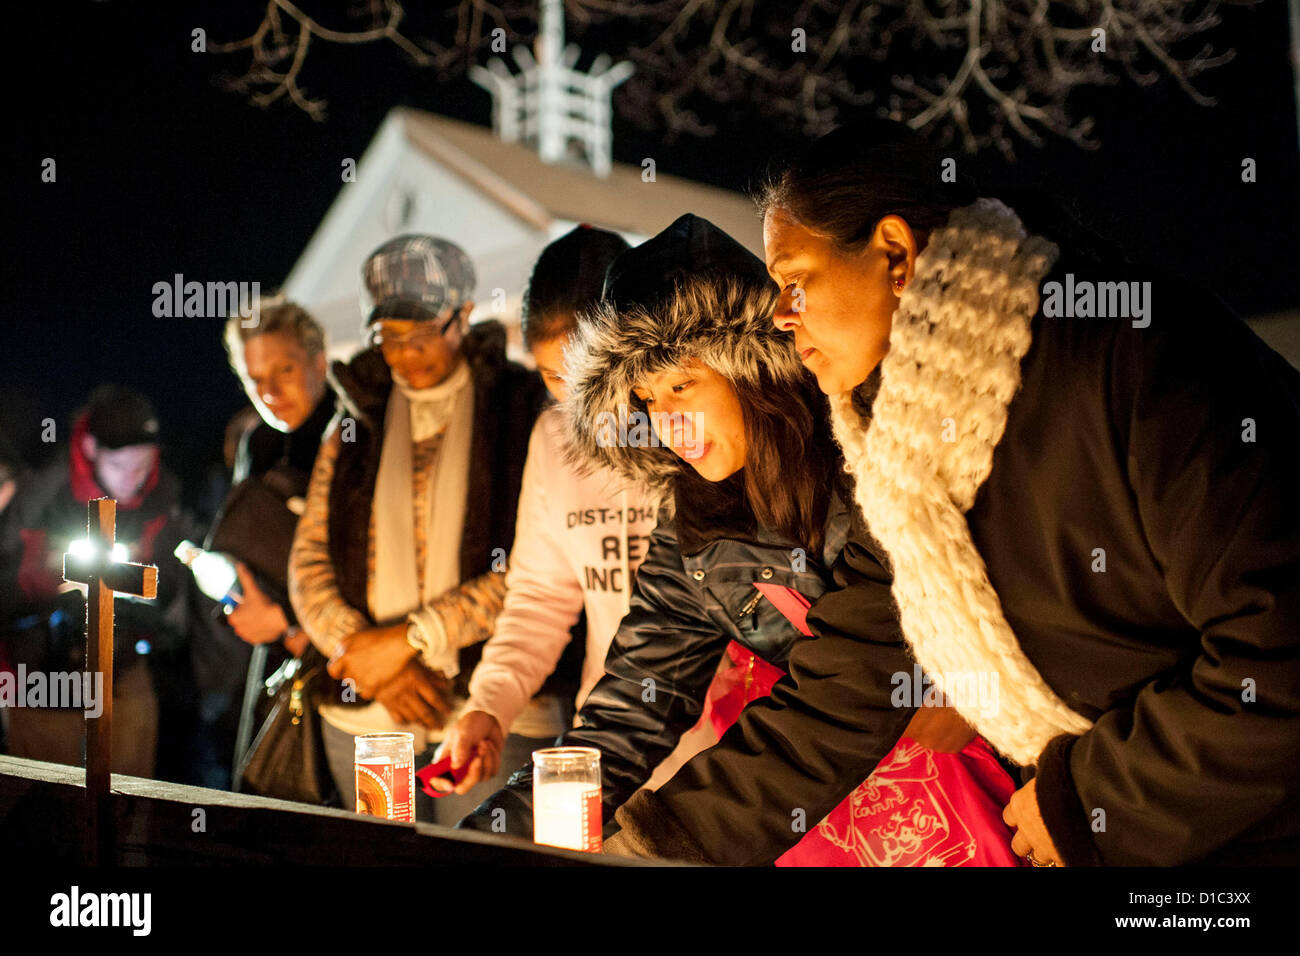 Newtown, CT 14. Dezember 2012 - Menschen zünden Kerzen außerhalb eine Mahnwache für die Opfer der Schule schießen in Sandy Hook Elementary School in Newtown CT., an der Saint Rose von Lima Kirche in Newtown, CT 14. Dezember 2012 statt.     (Foto von Gordon M. Grant/Alamy Live-Nachrichten) Stockfoto